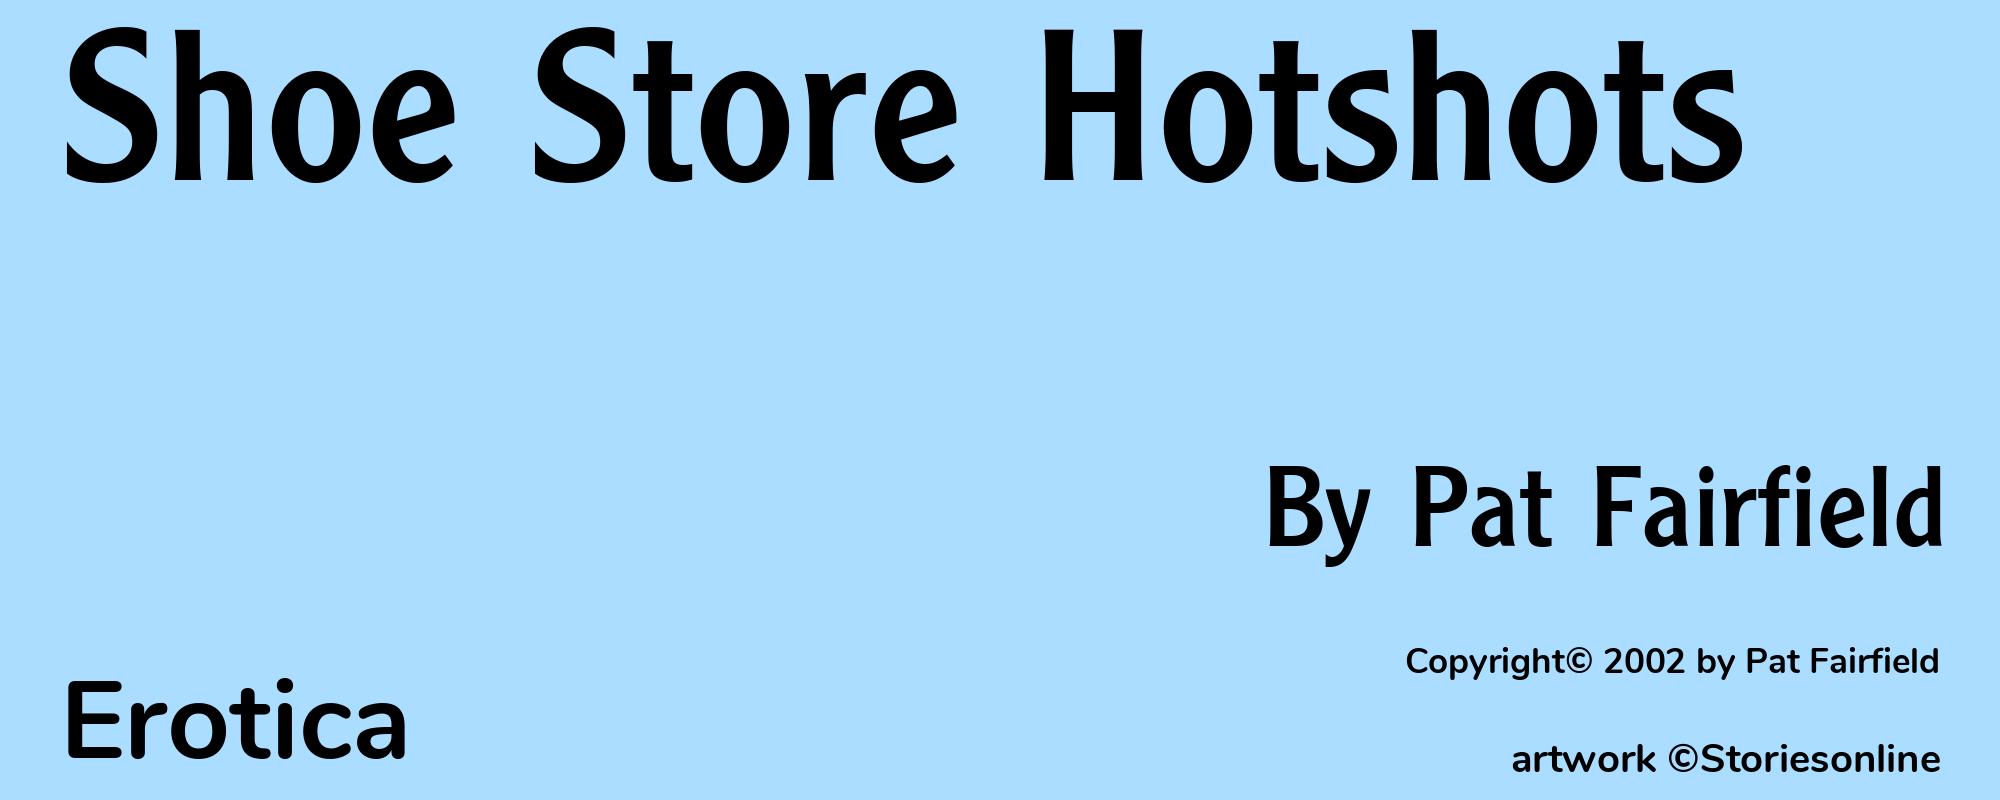 Shoe Store Hotshots - Cover